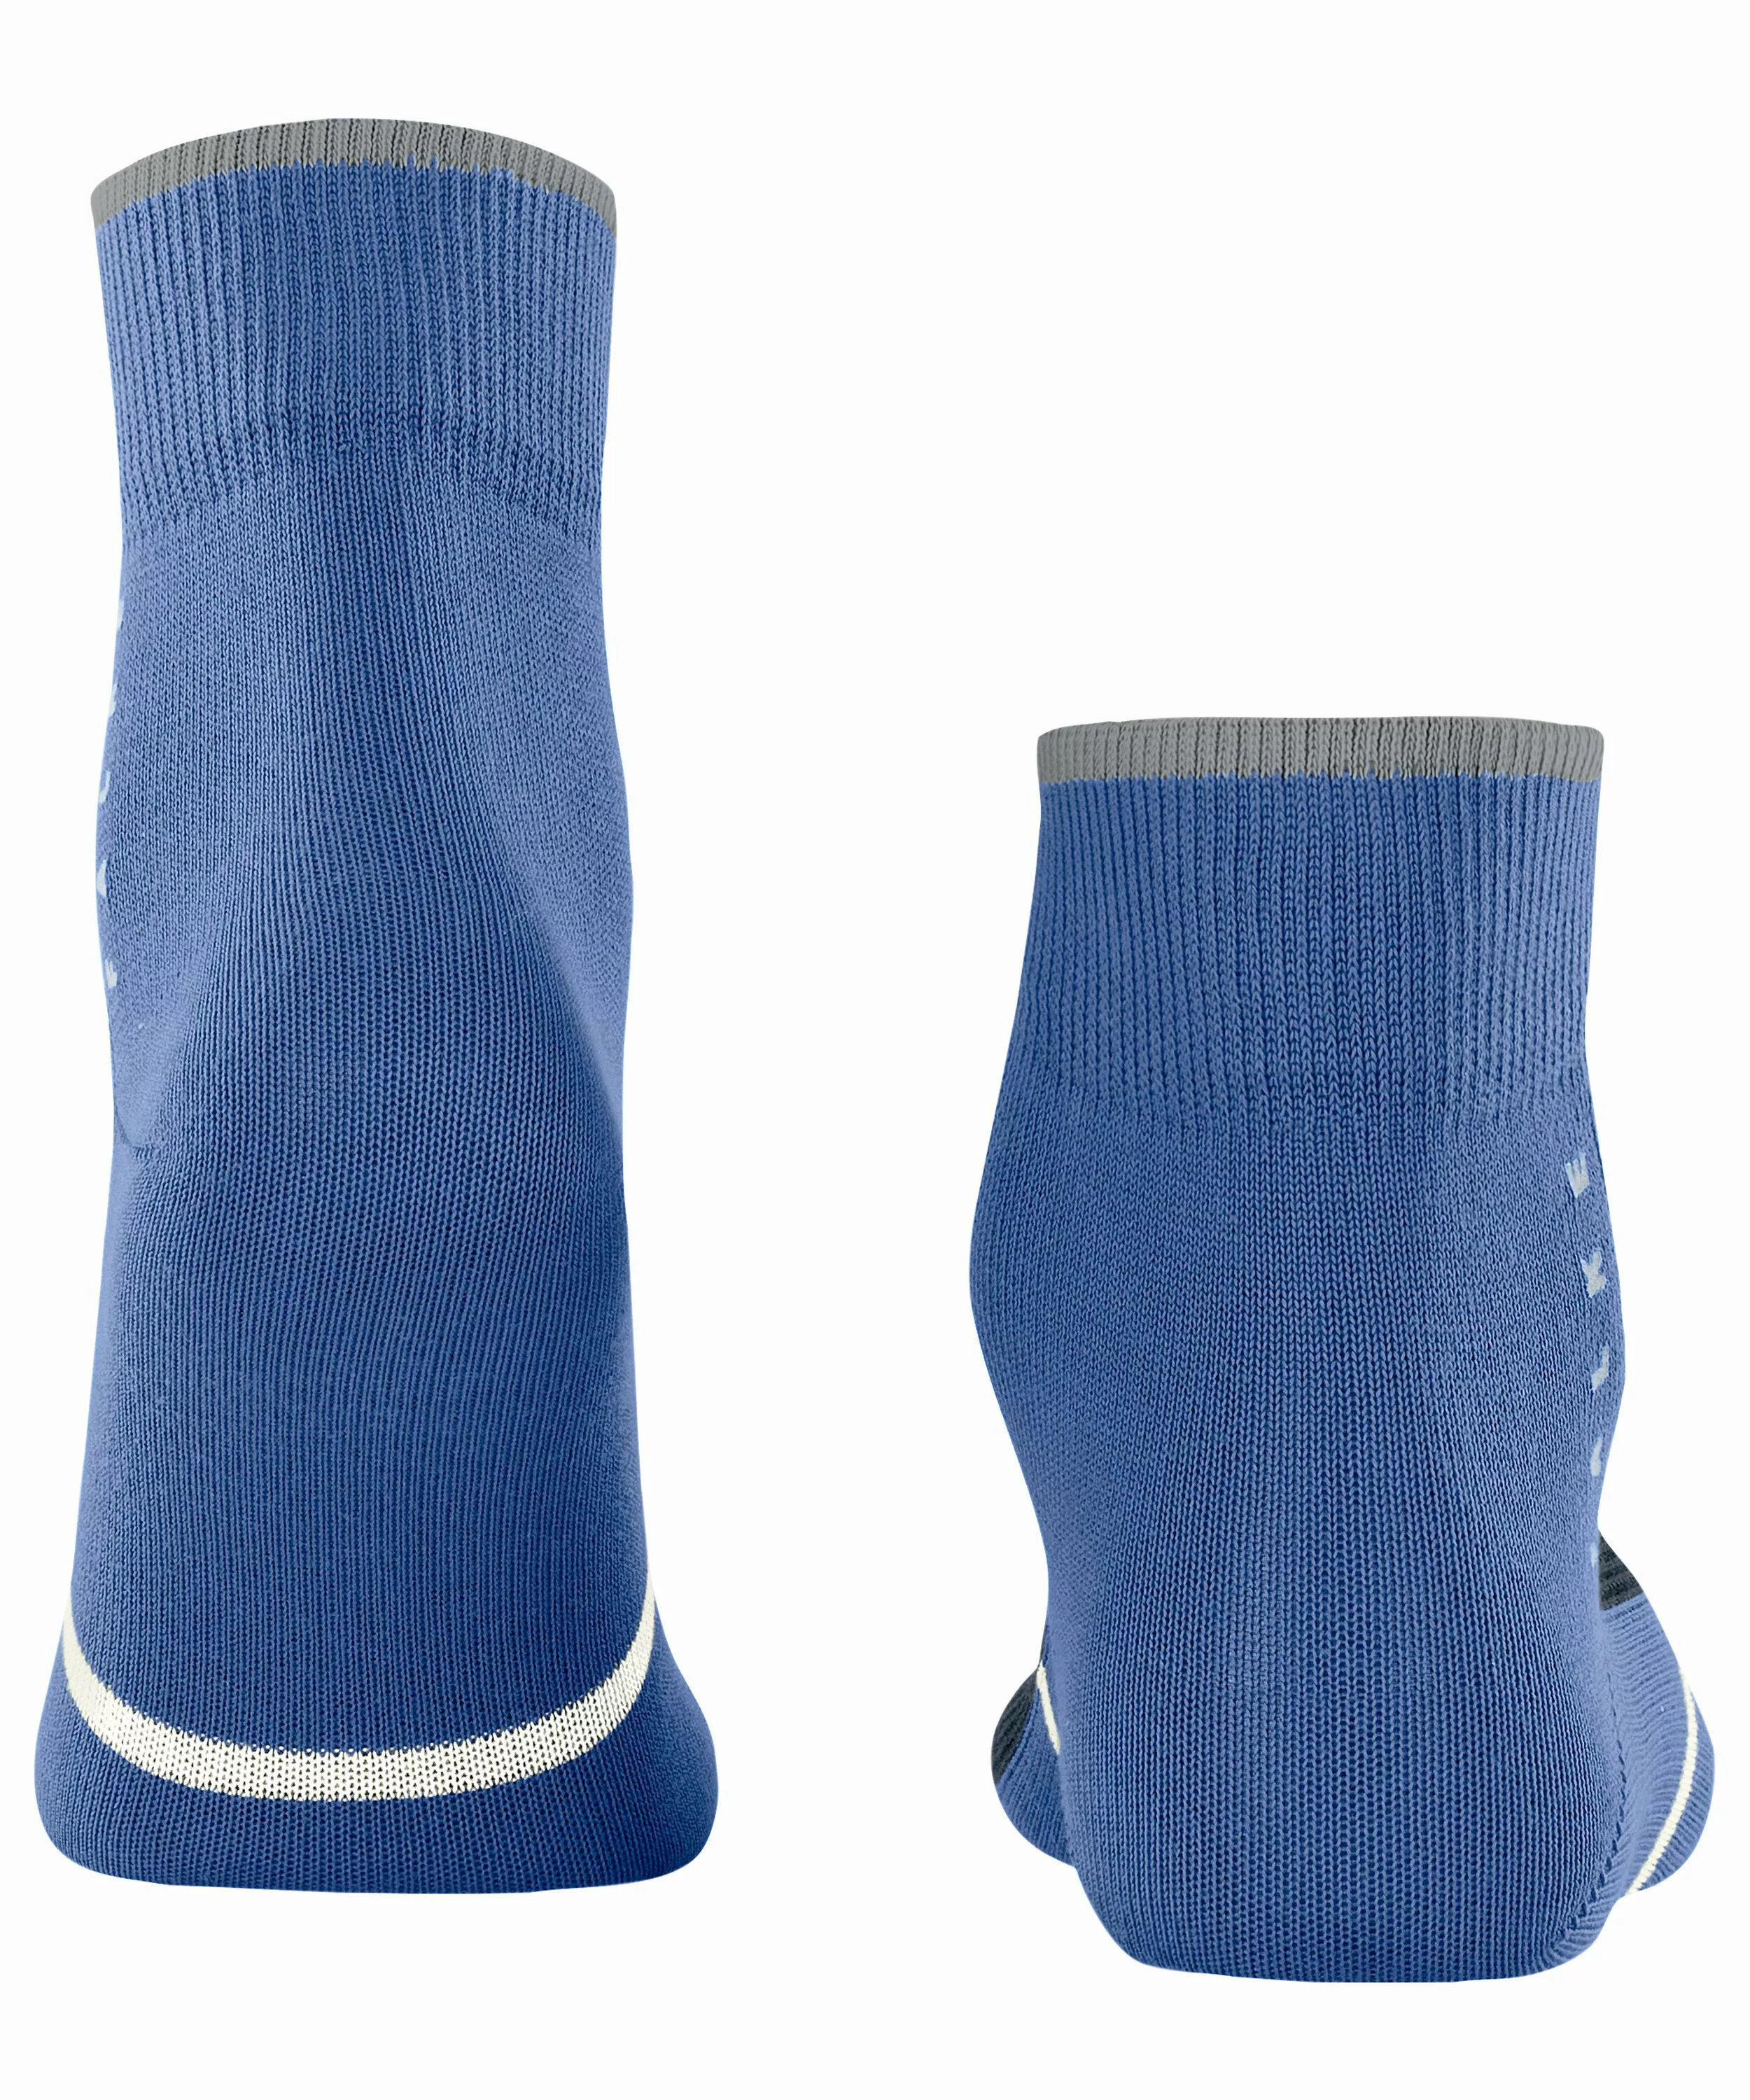 FALKE Versatile Socken, 44-45, Blau, Mehrfarbig, Baumwolle (Bio), 12486-684 günstig online kaufen